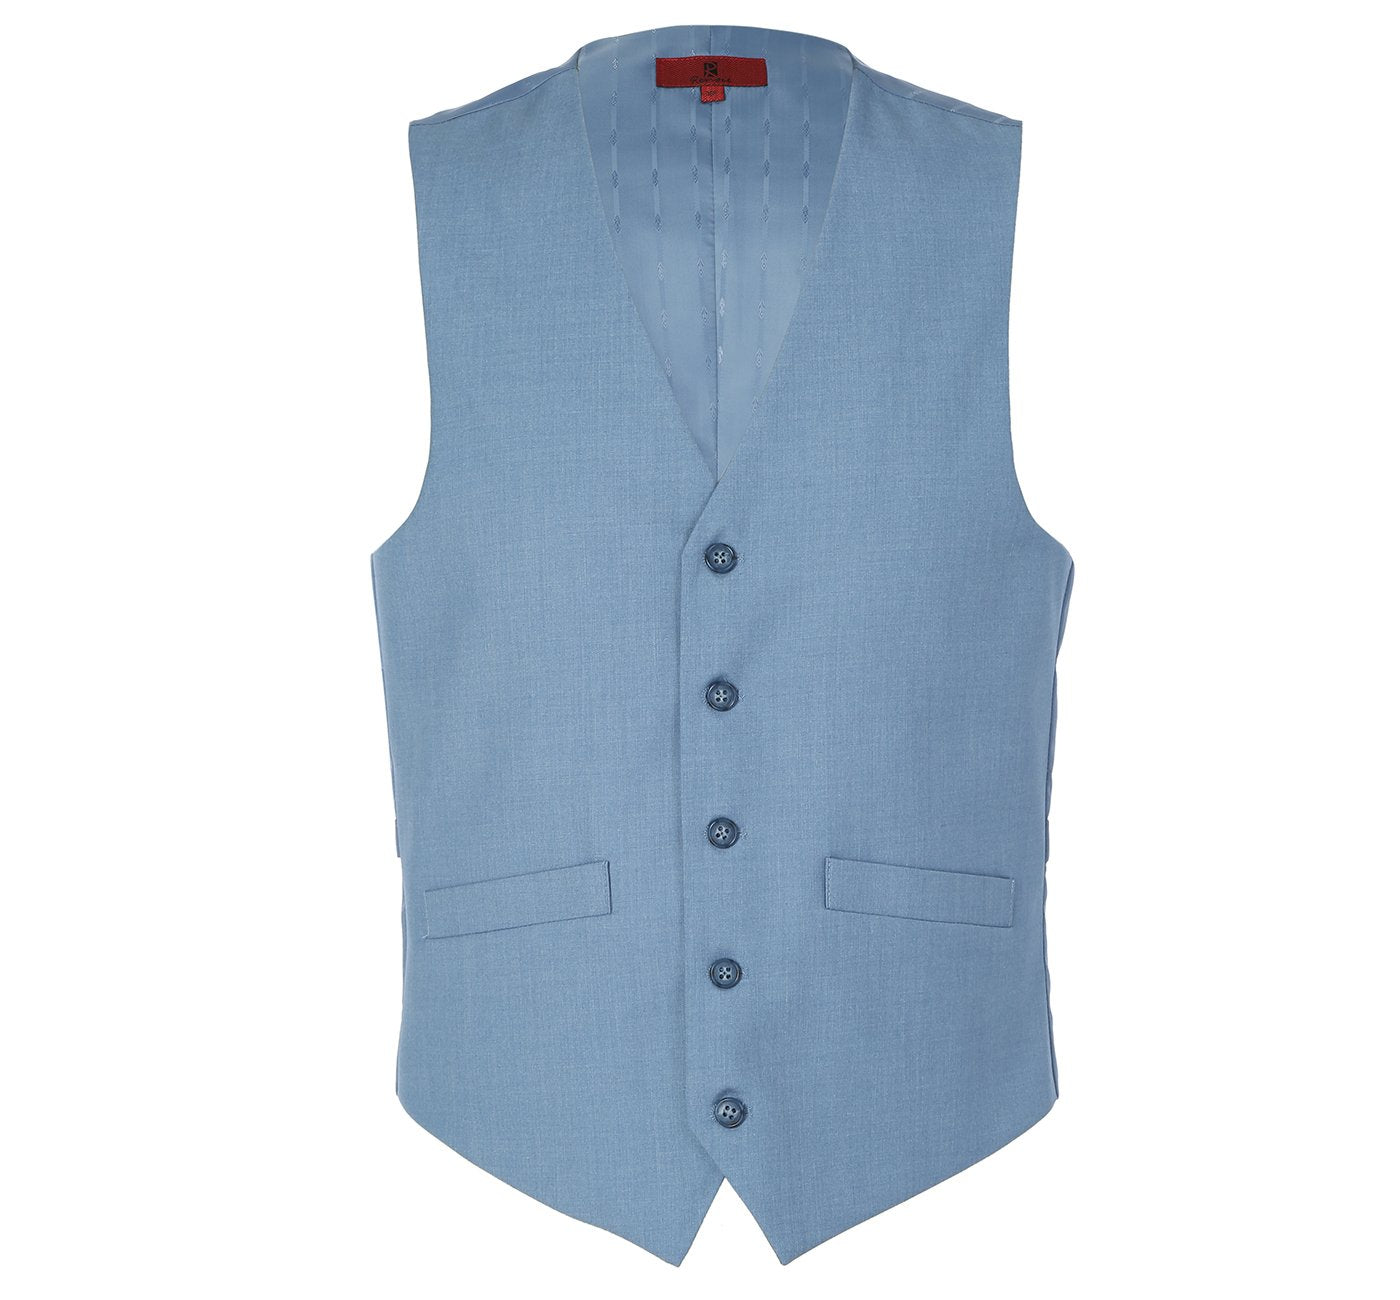 Men’s Business Suit Vest Regular Fit Dress Suit Waistcoat 1